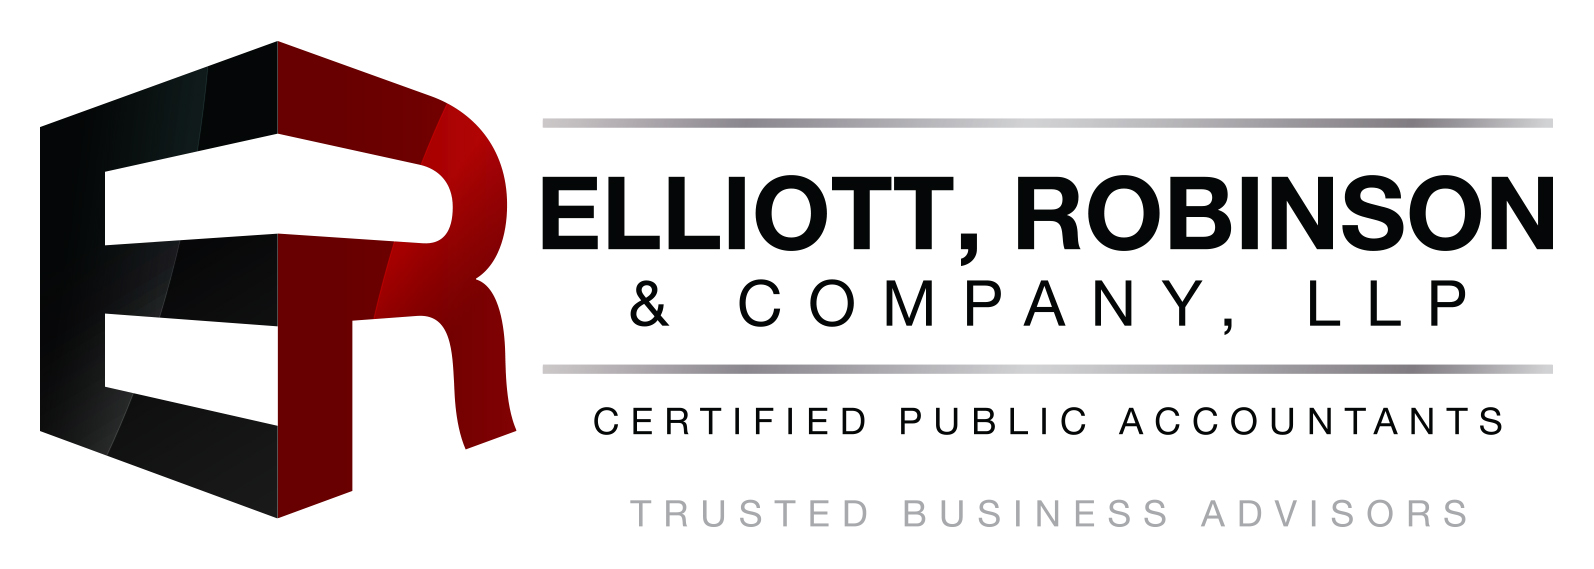 Elliott, Robinson & Company, LLP Logo - Linear - Burgandy